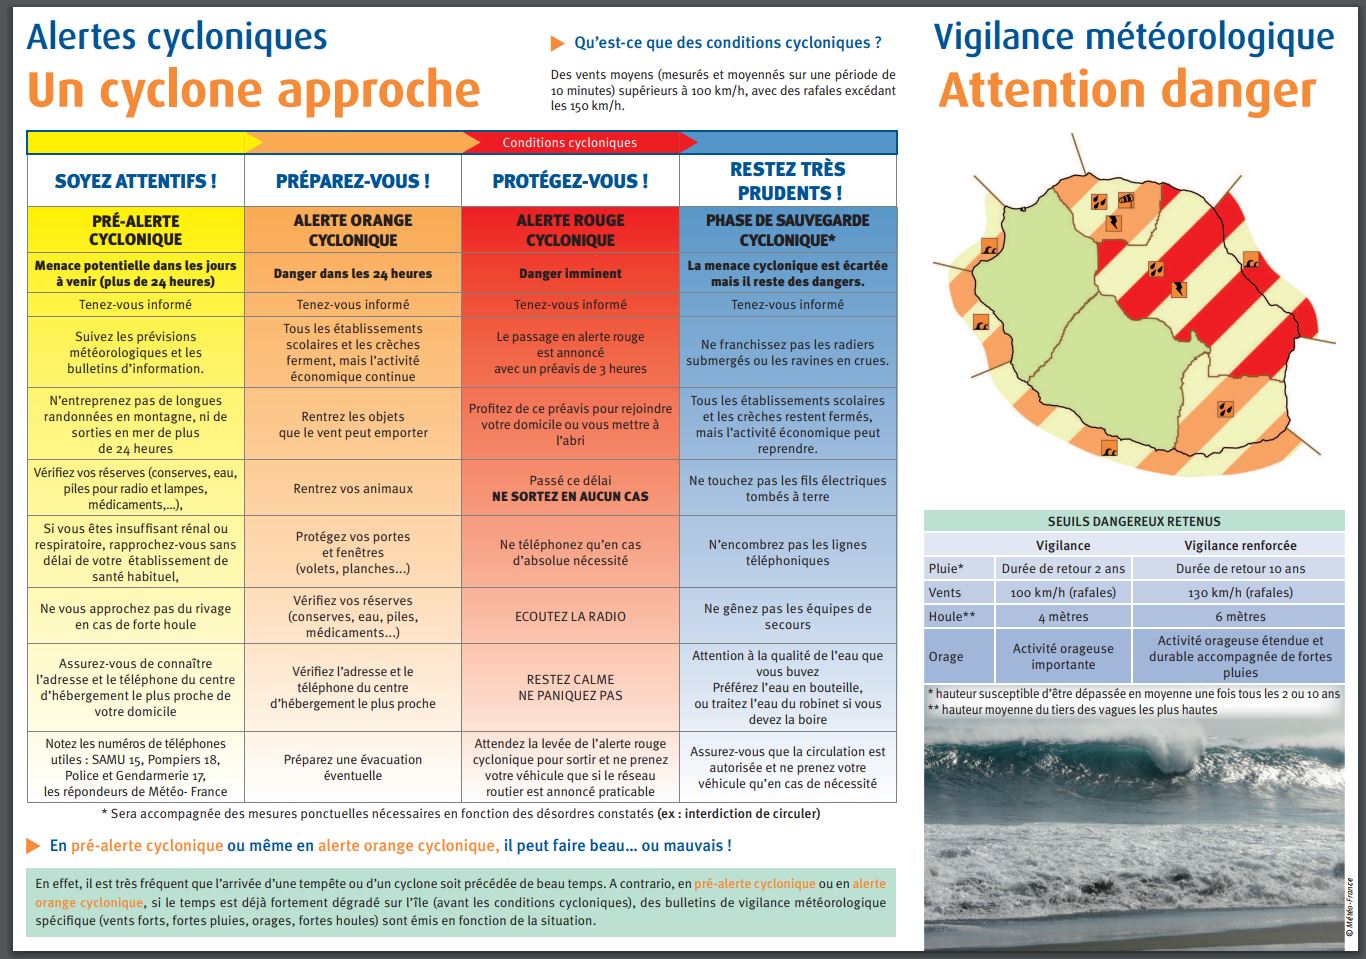 Système alerte cyclonique et vigilance météorologique à la Réunion